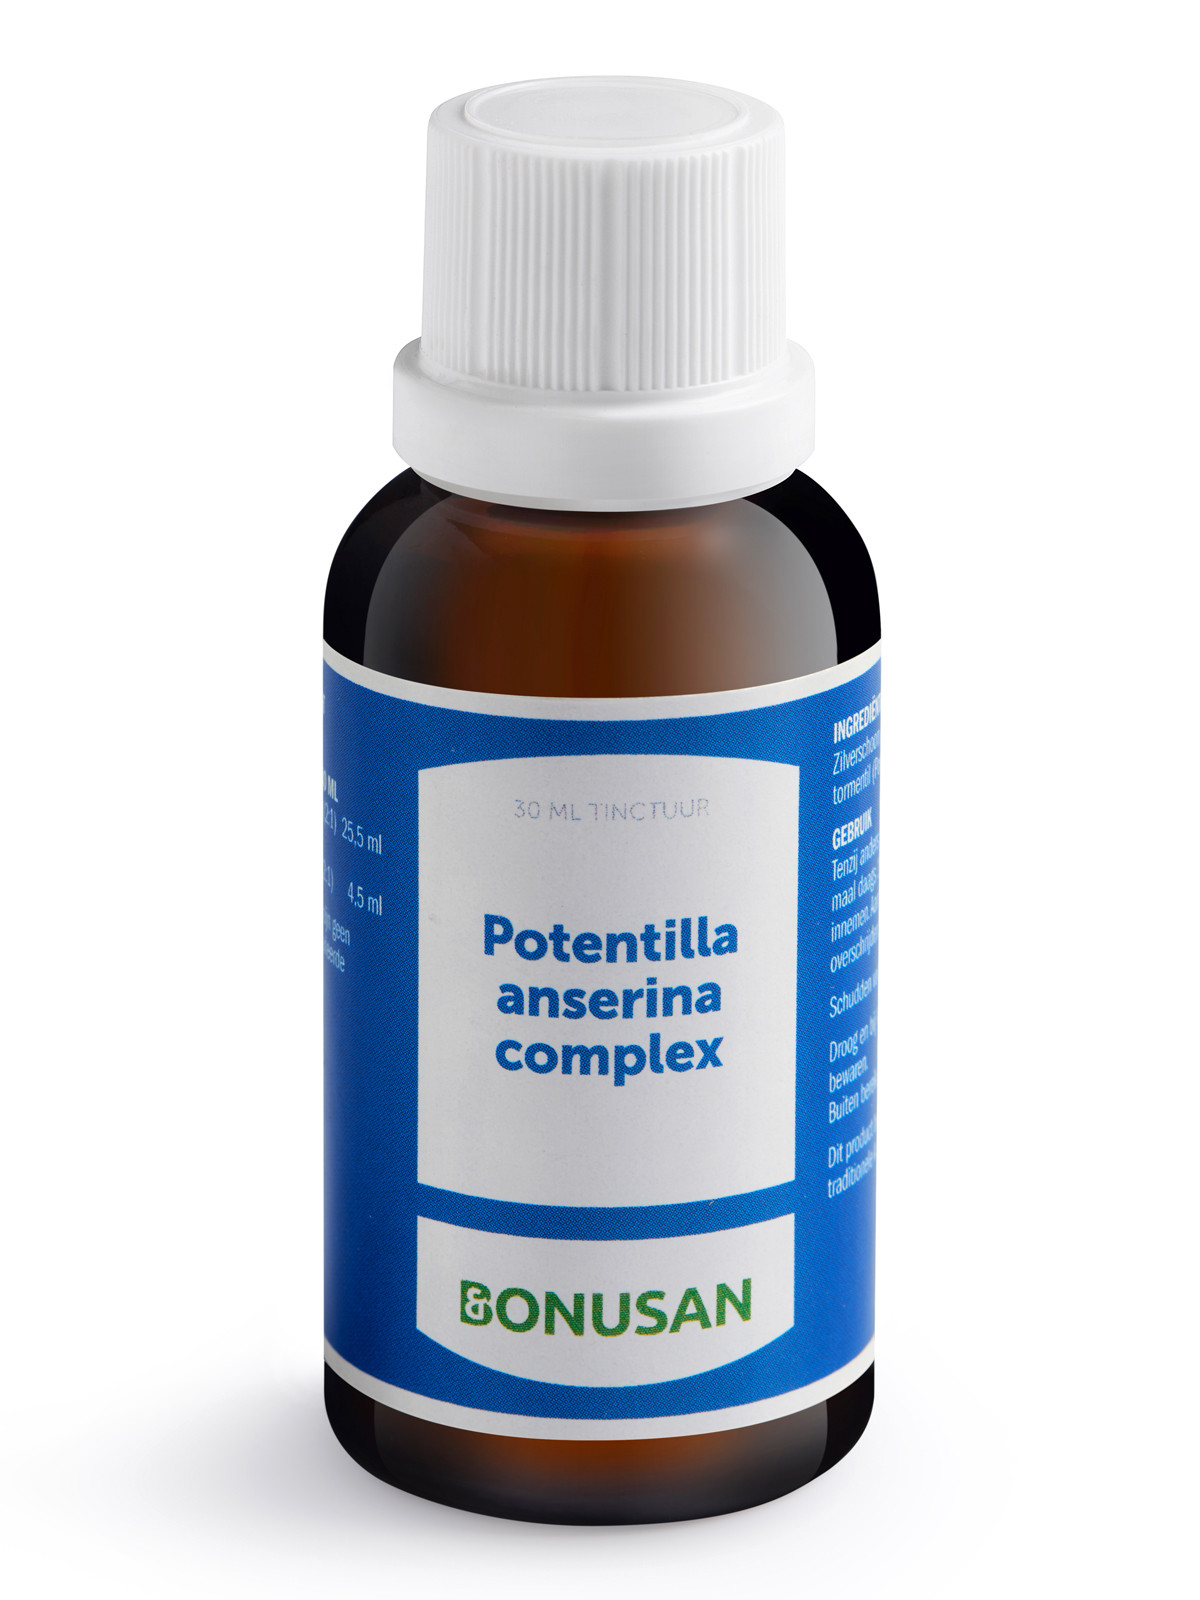 Bonusan - Potentilla anserina complex